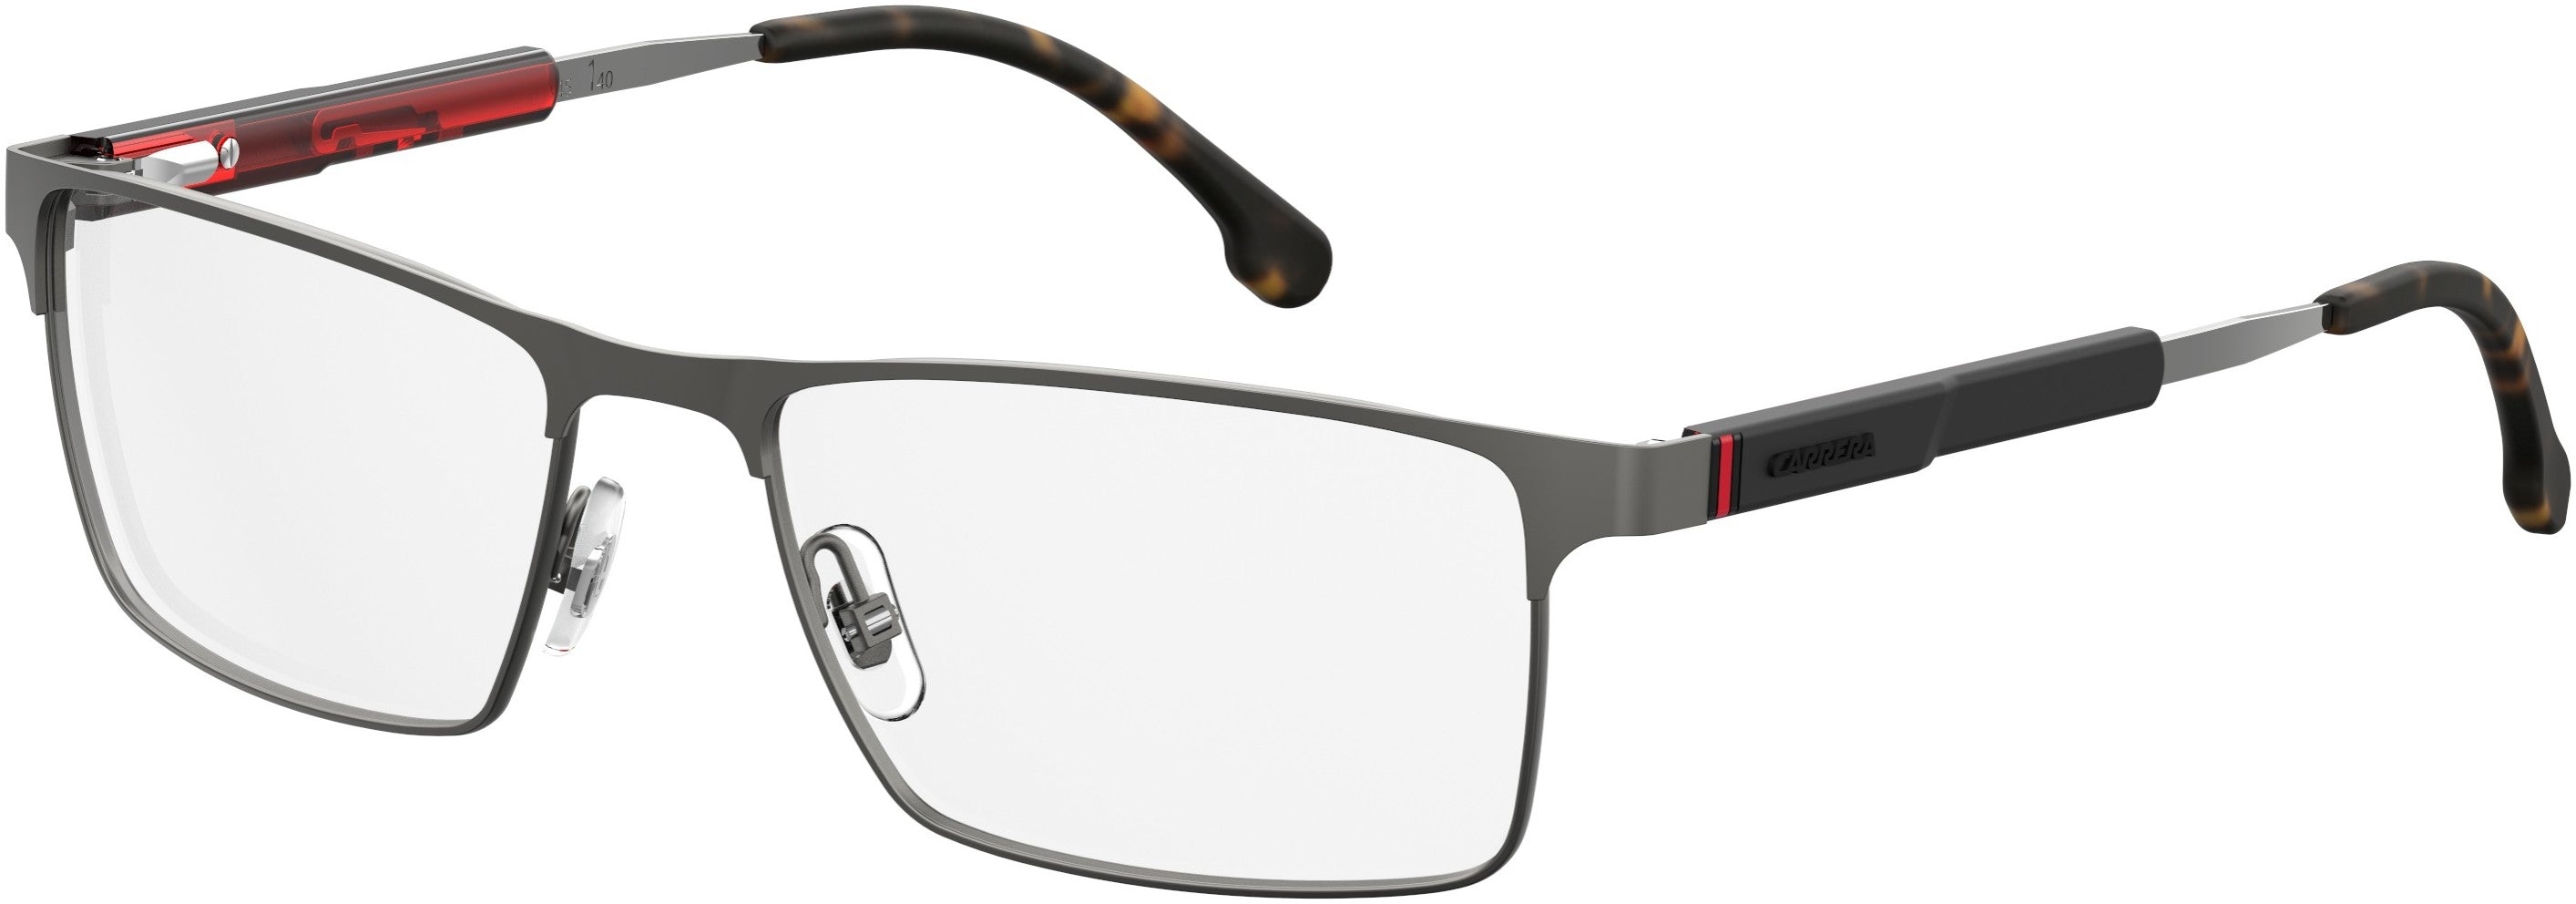  Carrera 8833 Rectangular Eyeglasses 0R80-0R80  Semi Matte Dark Ruthenium (00 Demo Lens)